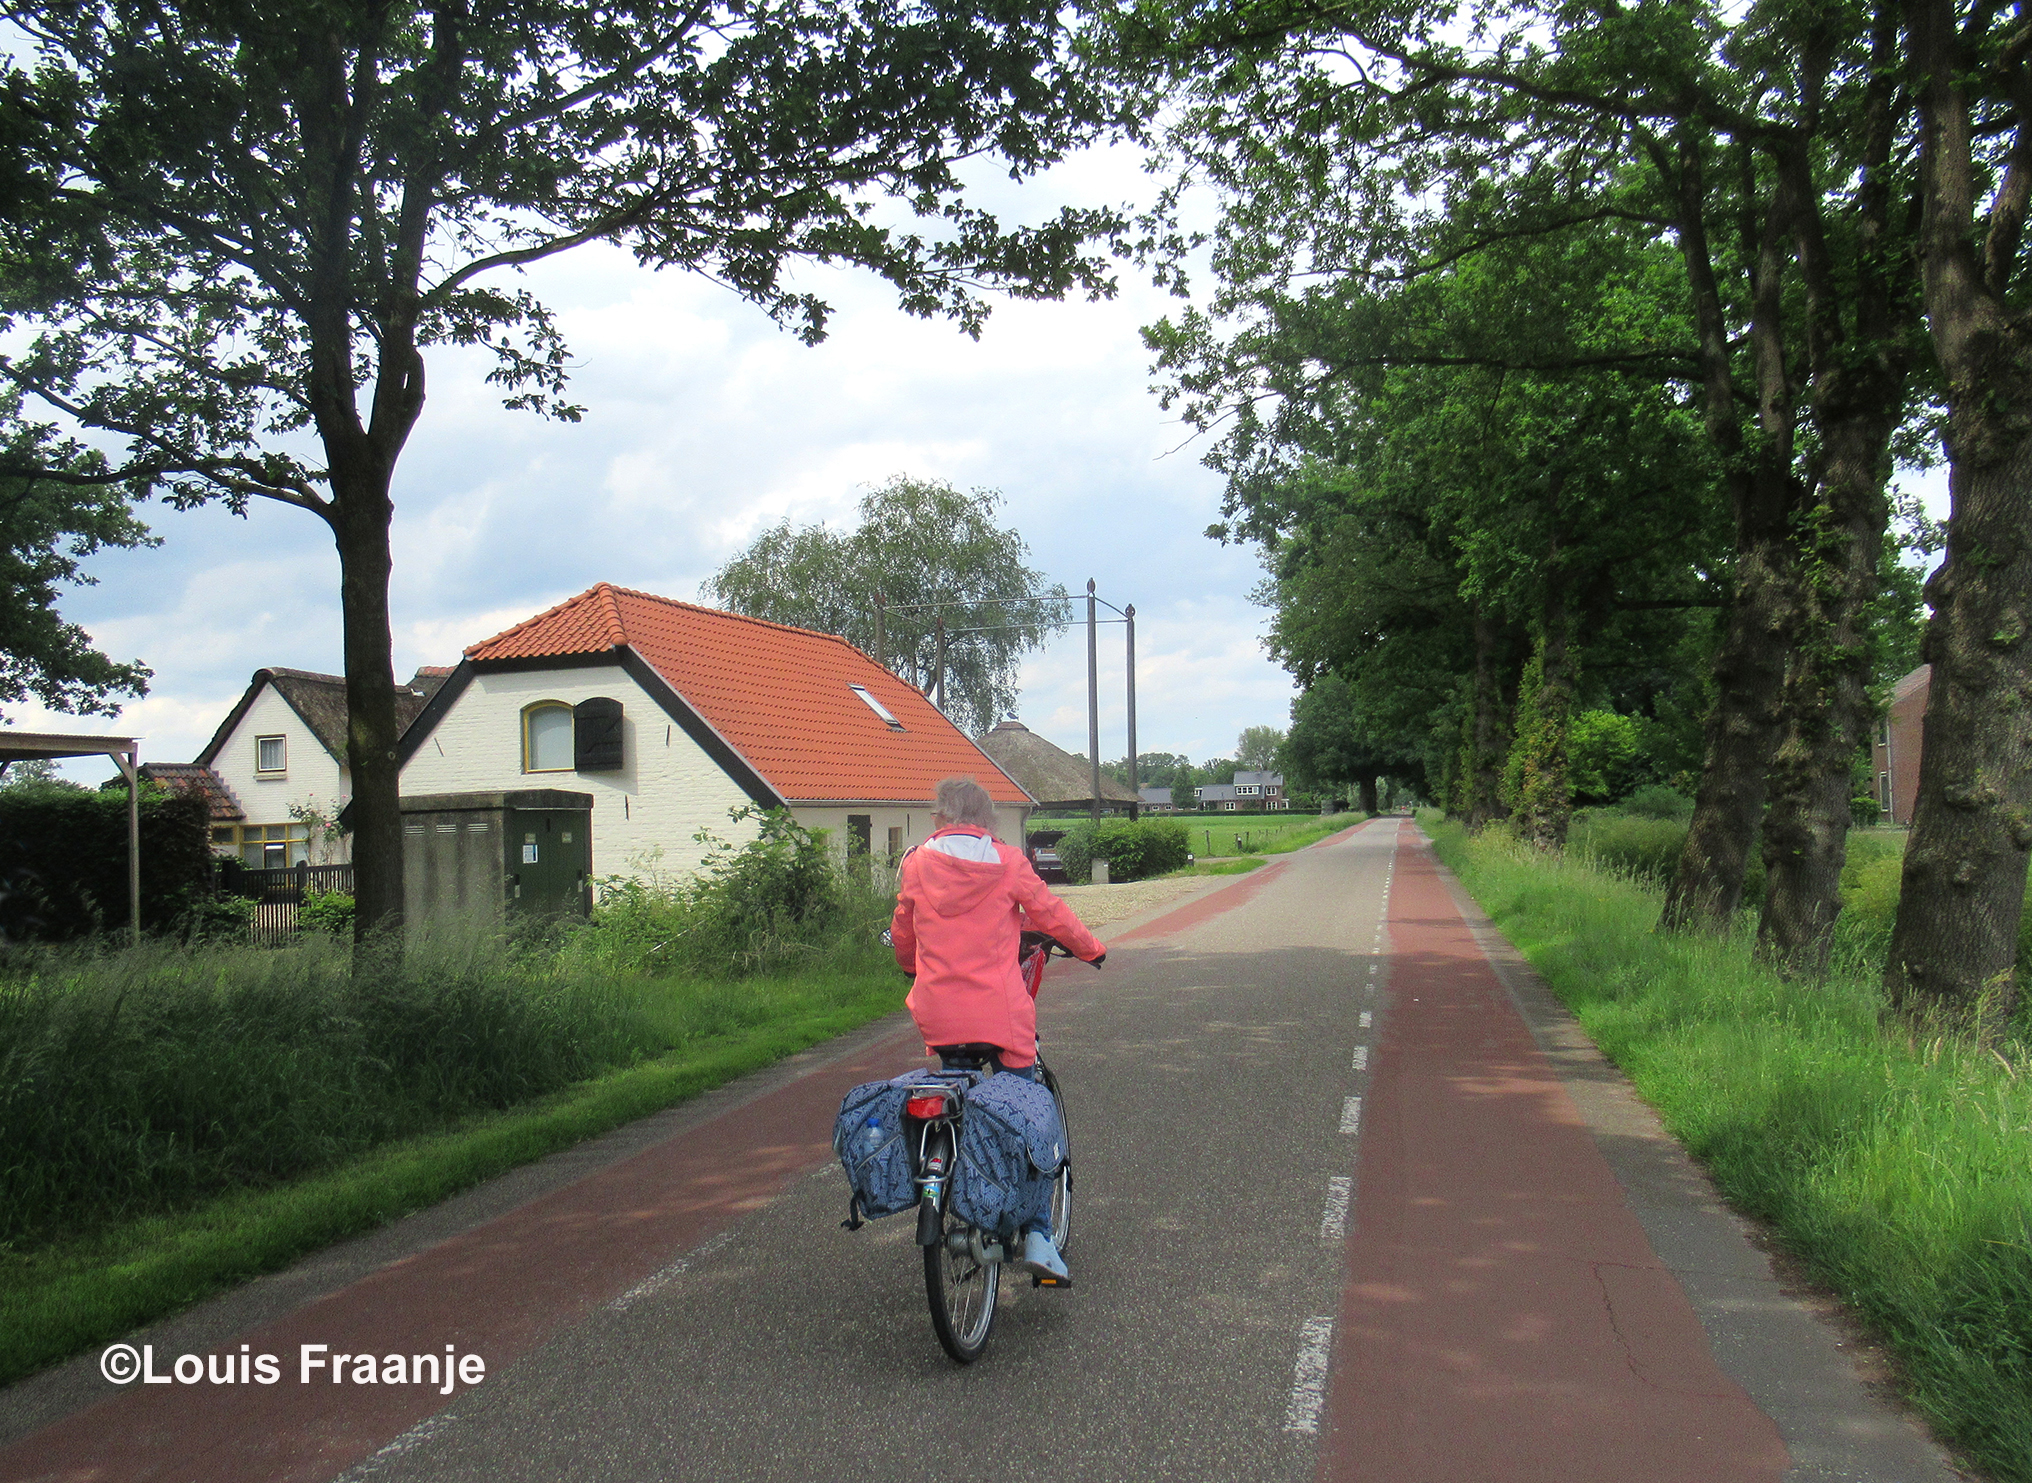  Met het brood van Bakker Ten Veen in de fietstas gaan we 'Op huus an' - Foto: ©Louis Fraanje